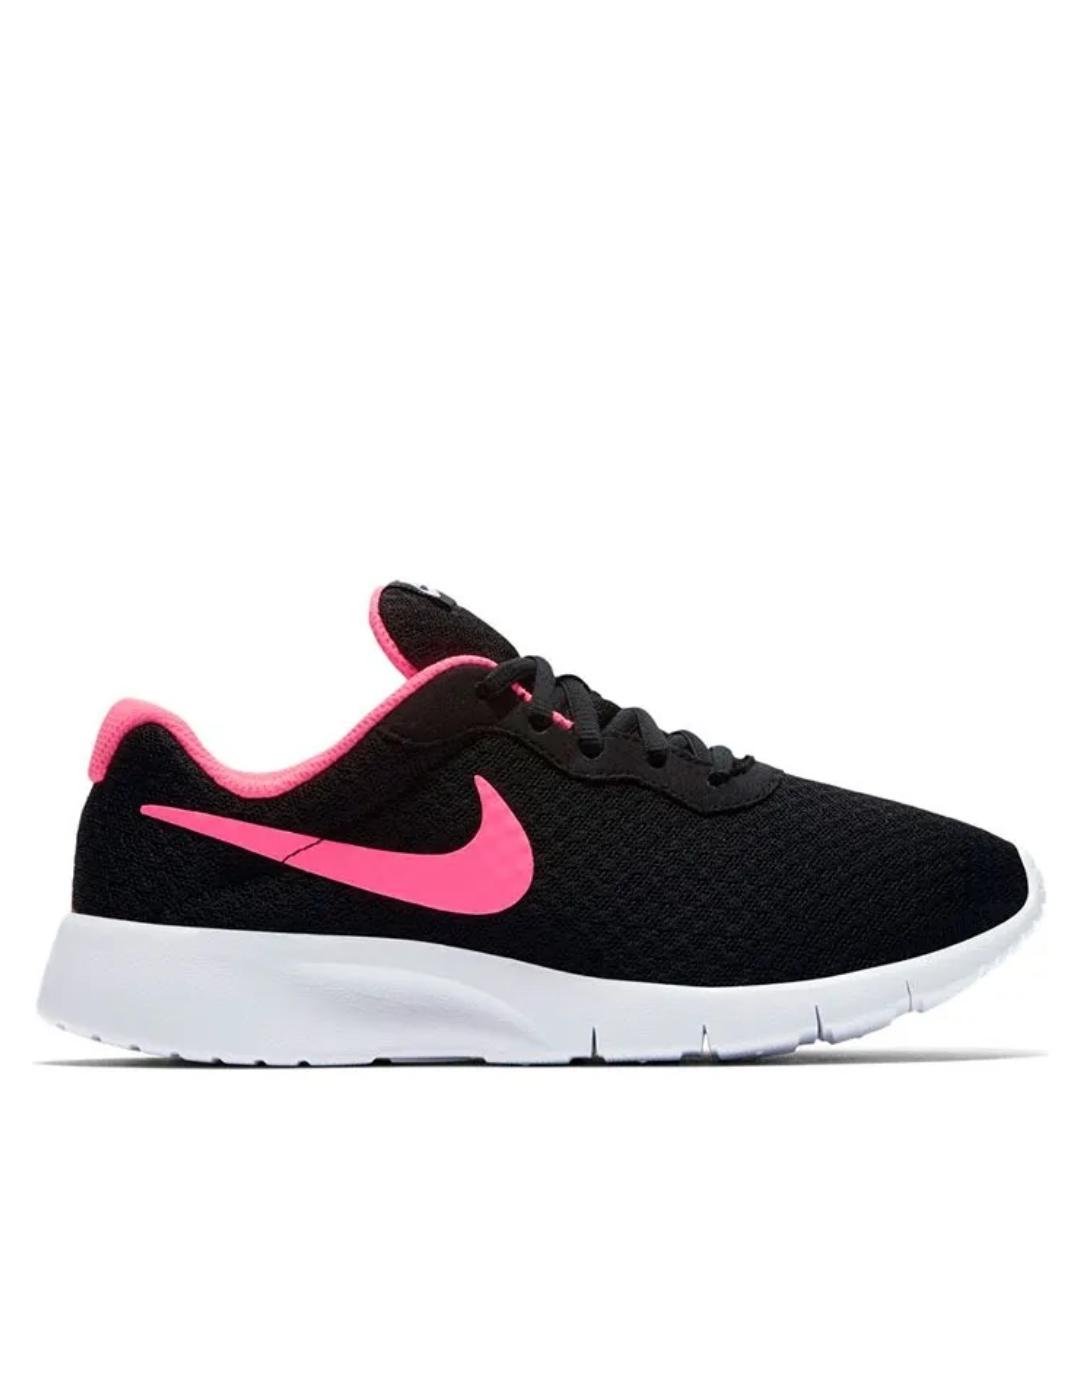 Nike tanjun negro rosa de niña.